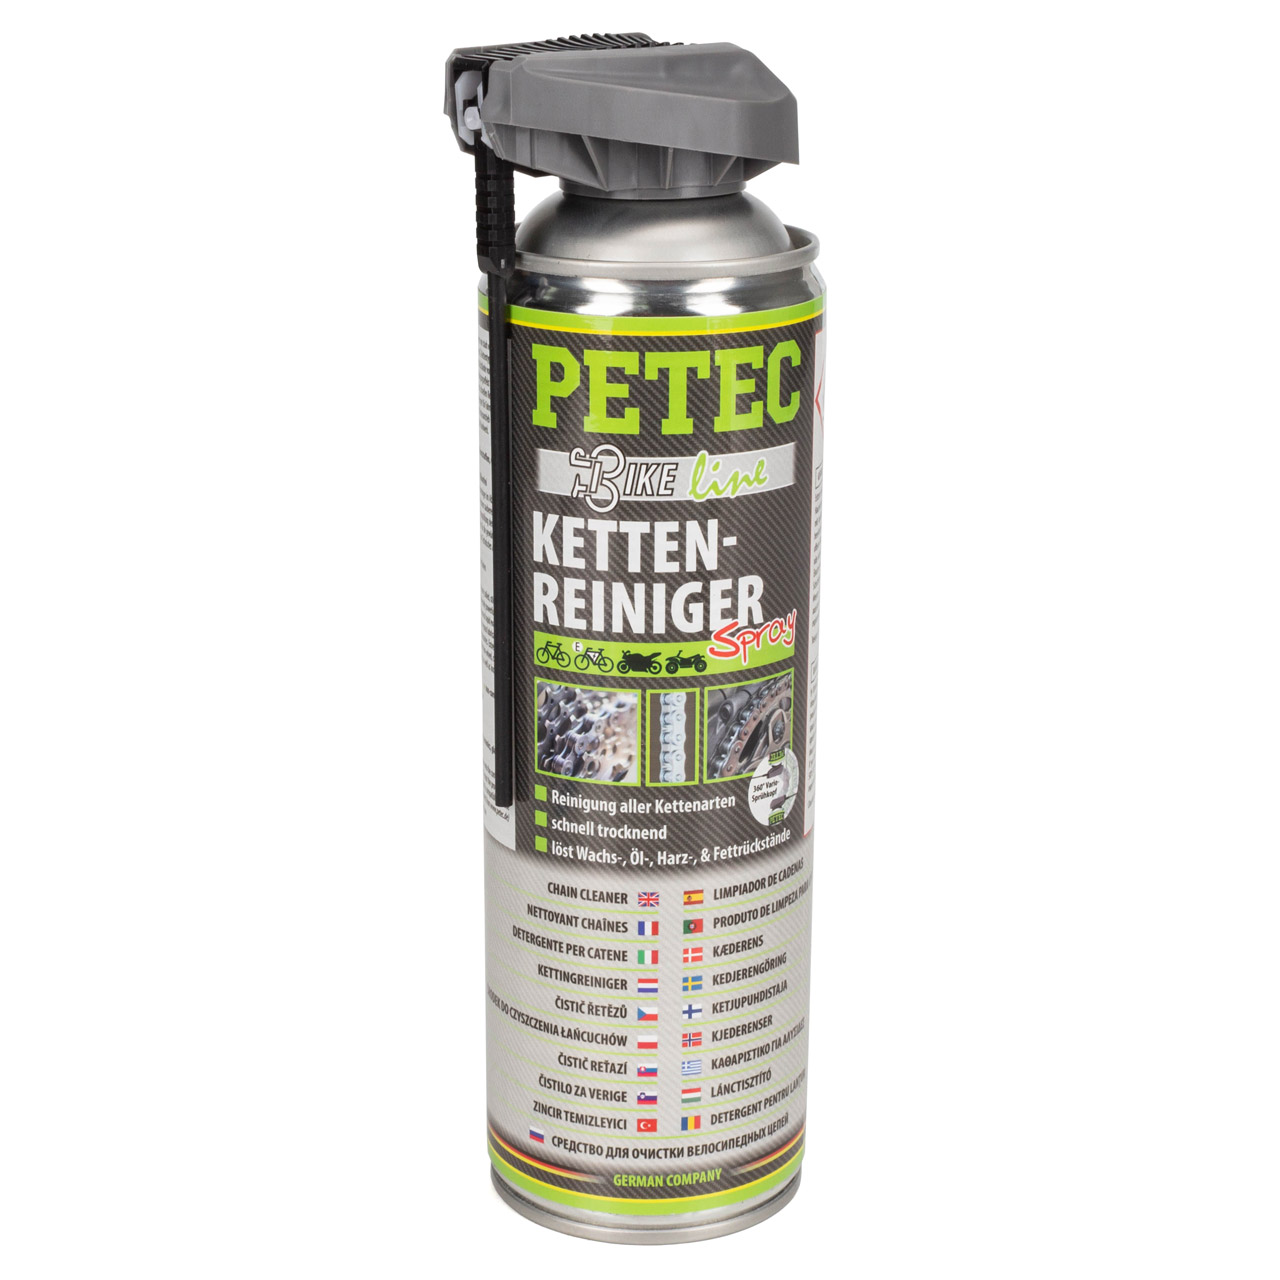 PETEC 70540 Kettenreiniger Spray Bike Line Ketten Antrieb Reiniger